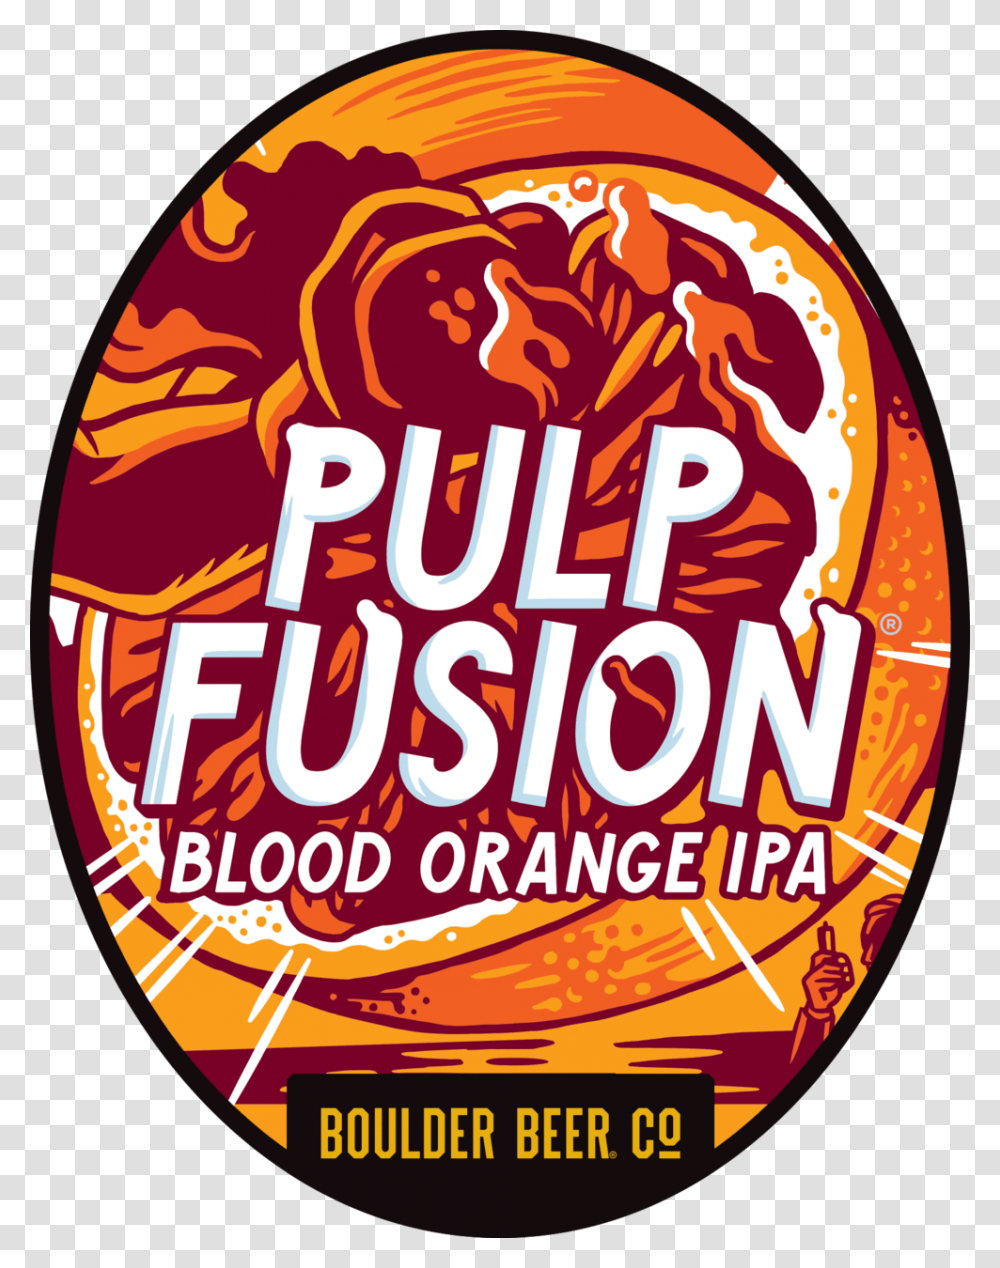 Boulder Beer Pulp Fusion Oval Label, Logo, Poster Transparent Png